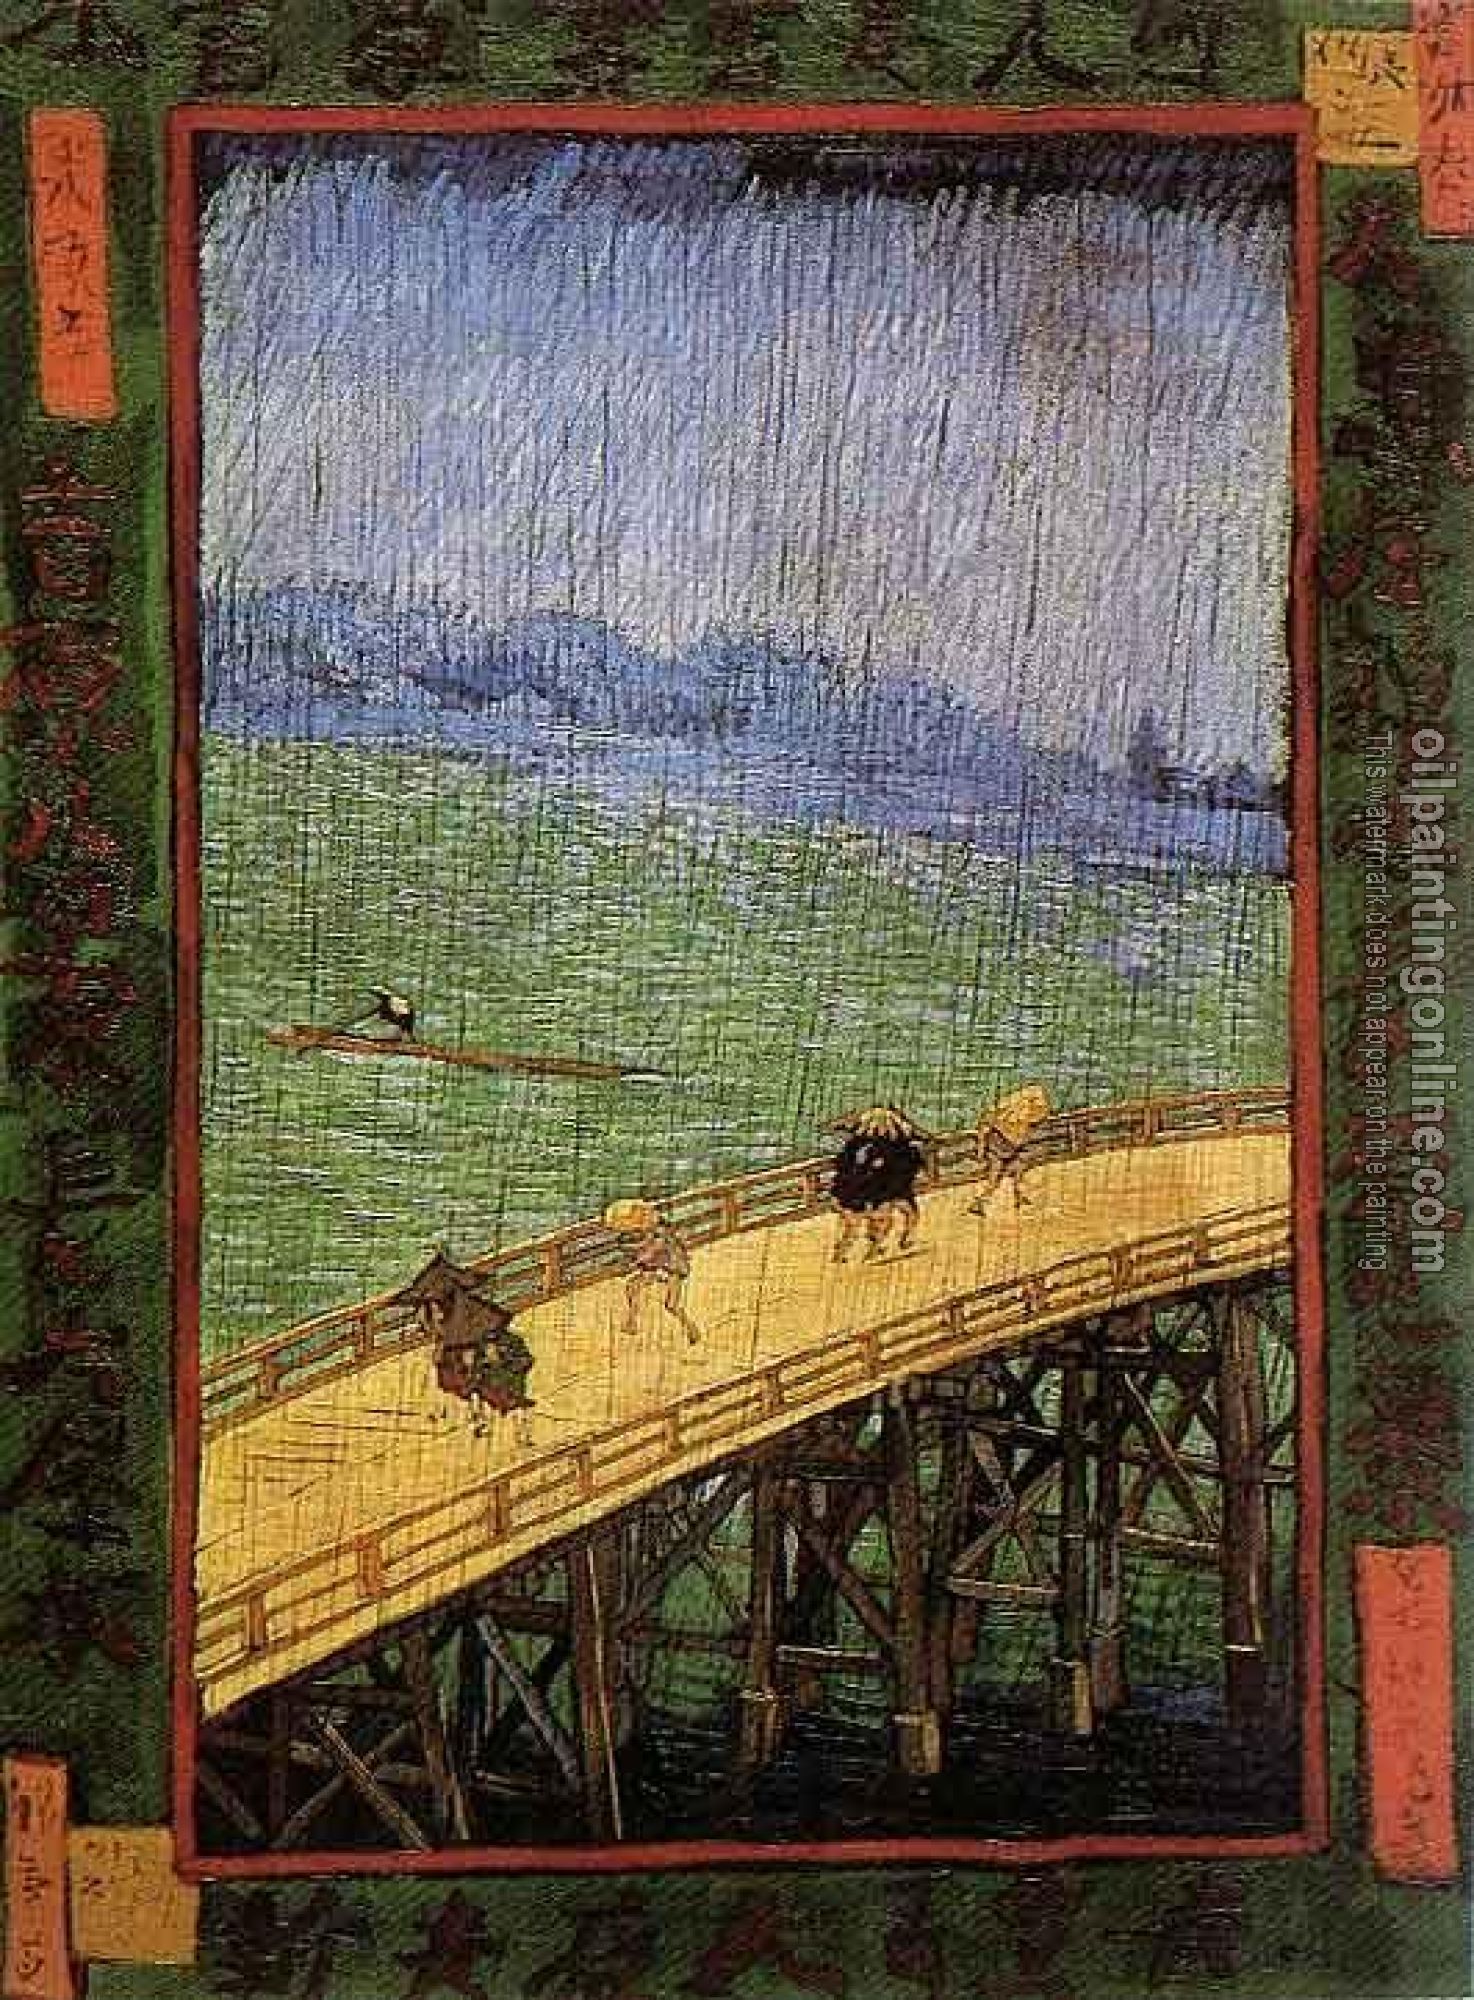 Gogh, Vincent van - Japonaiserie, Bridge in the Rain